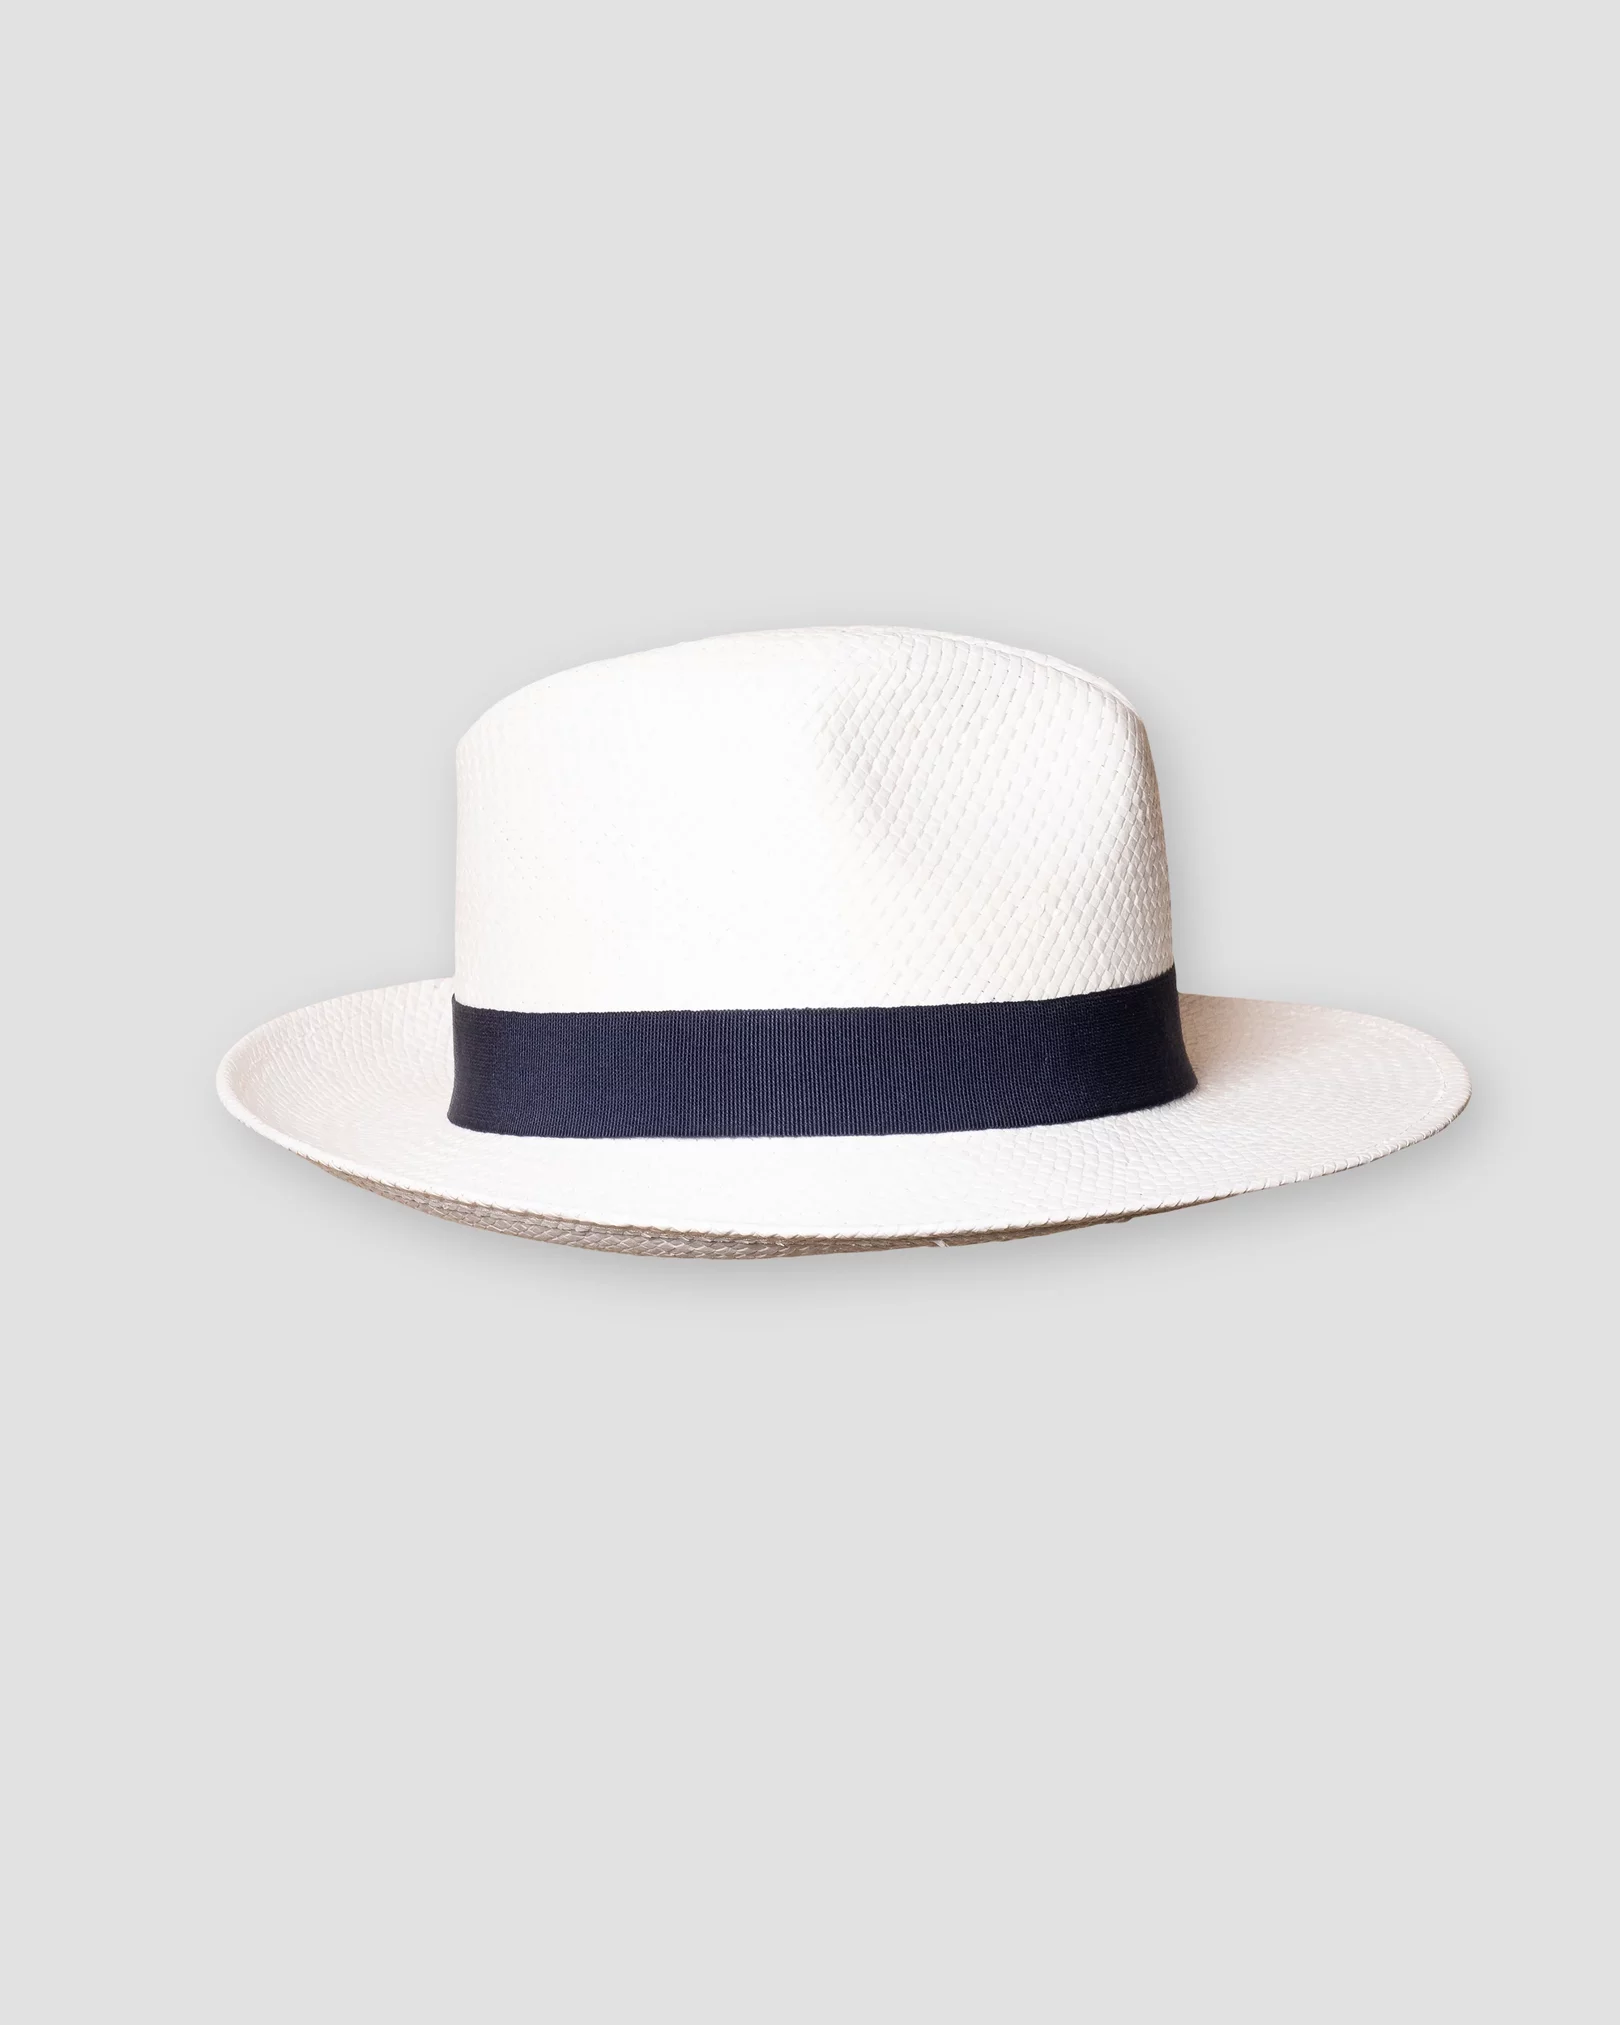 Eton - white straw hat navy ribbon